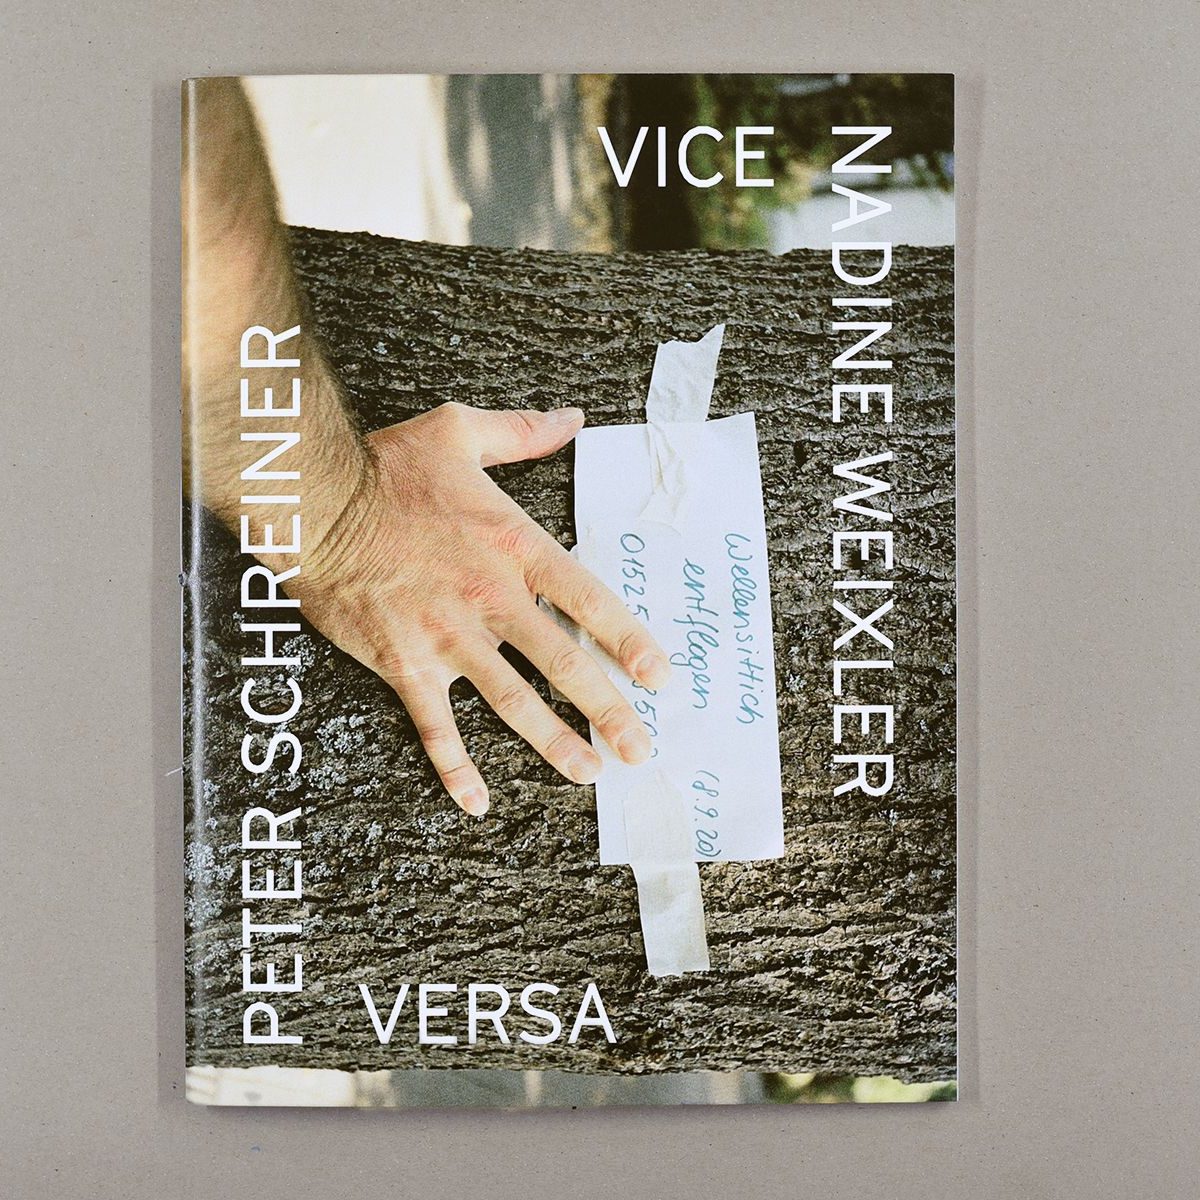 Katalog Nadine Weixler, Peter Schreiner – Vice Versa